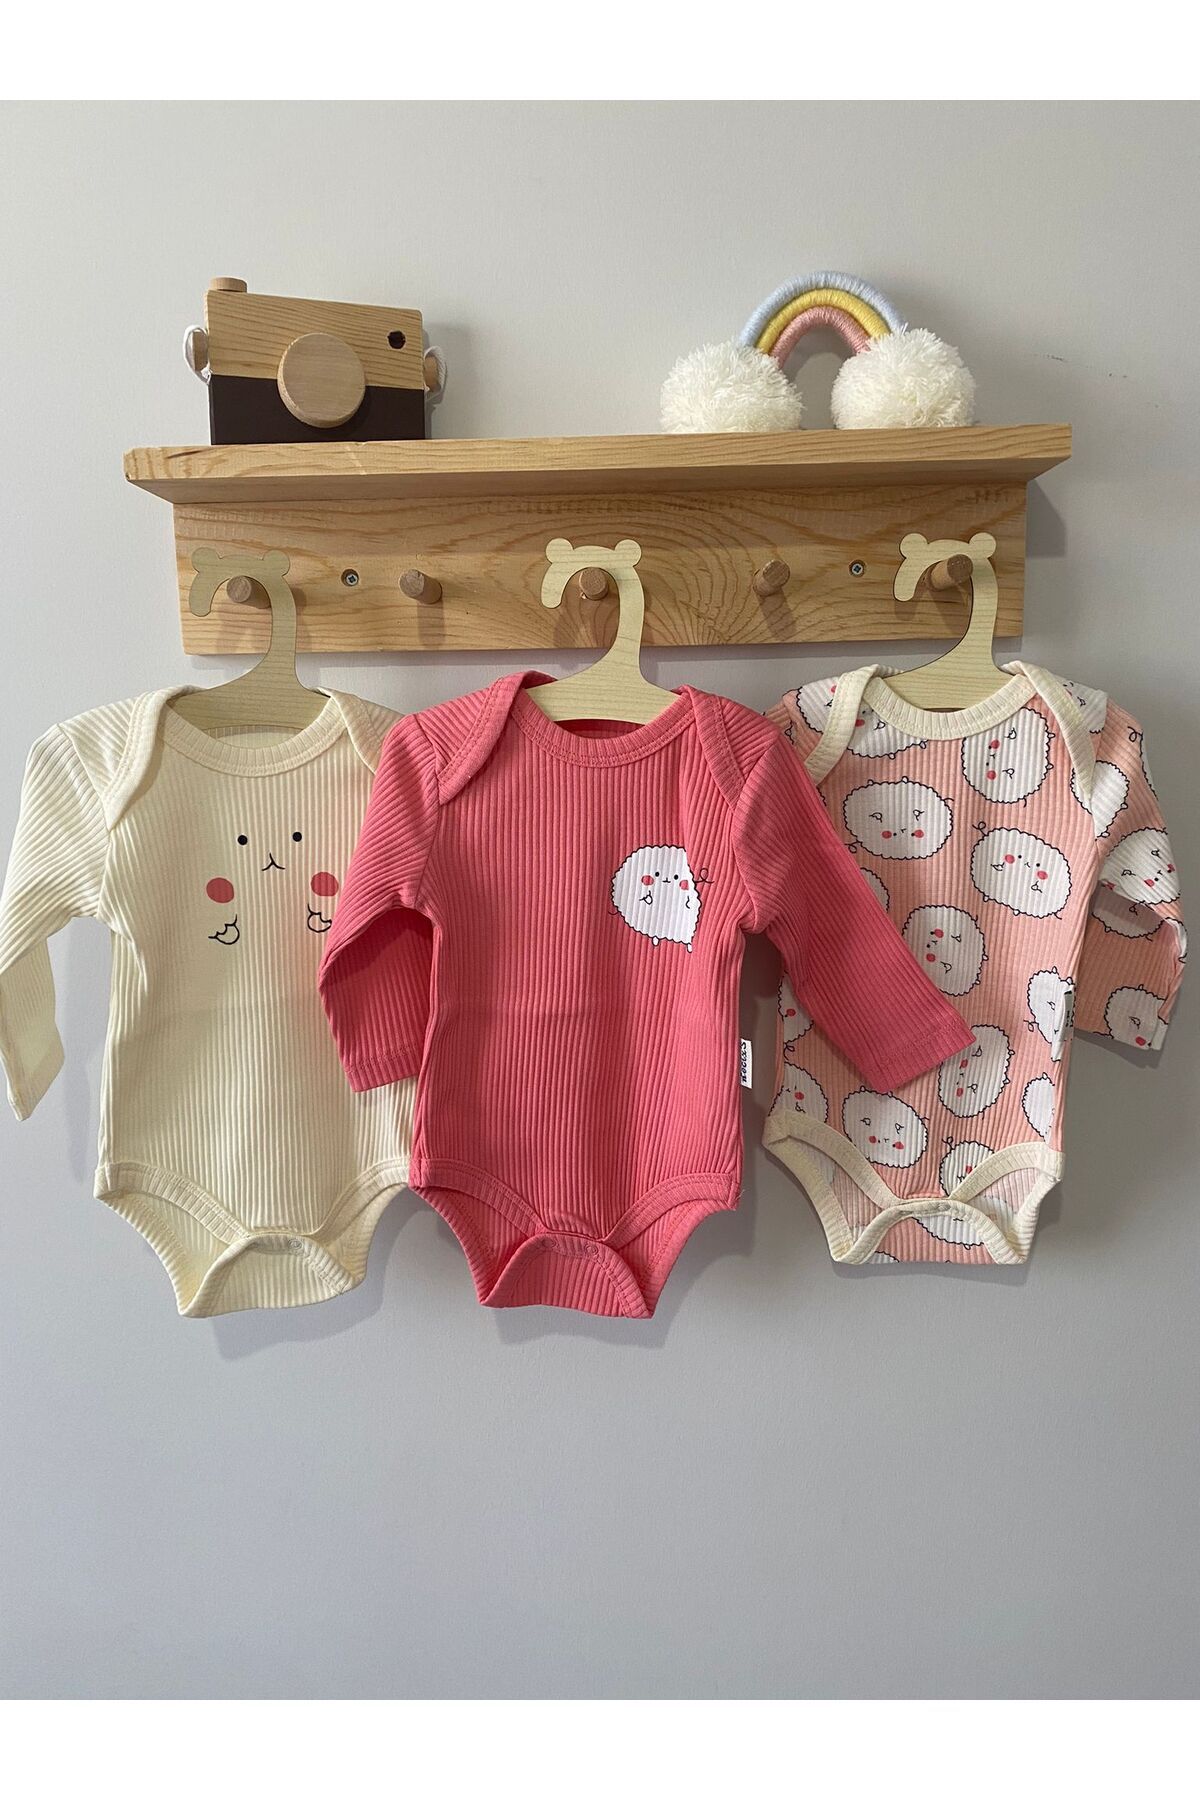 Asel Kids Shop Üçlü Kız Bebek Çıtçıtlı Zıbın